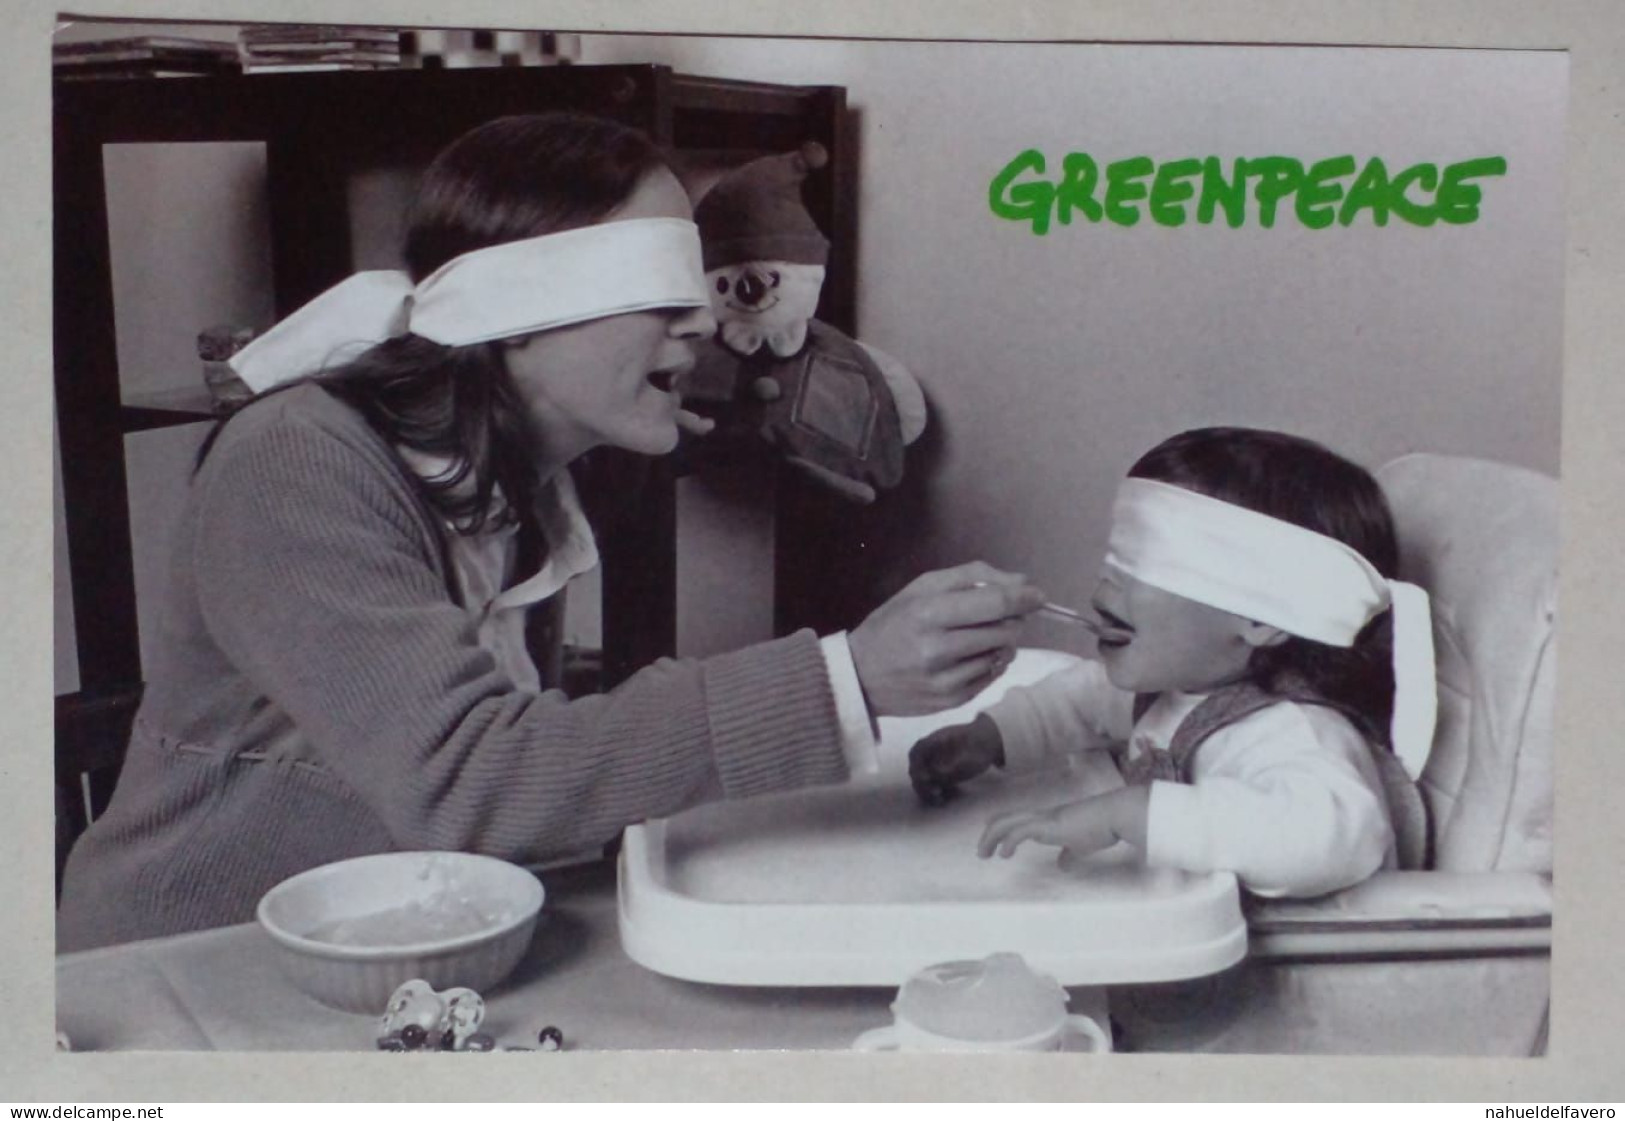 Carte Postale - Campagne Greenpeace. - Manifestazioni